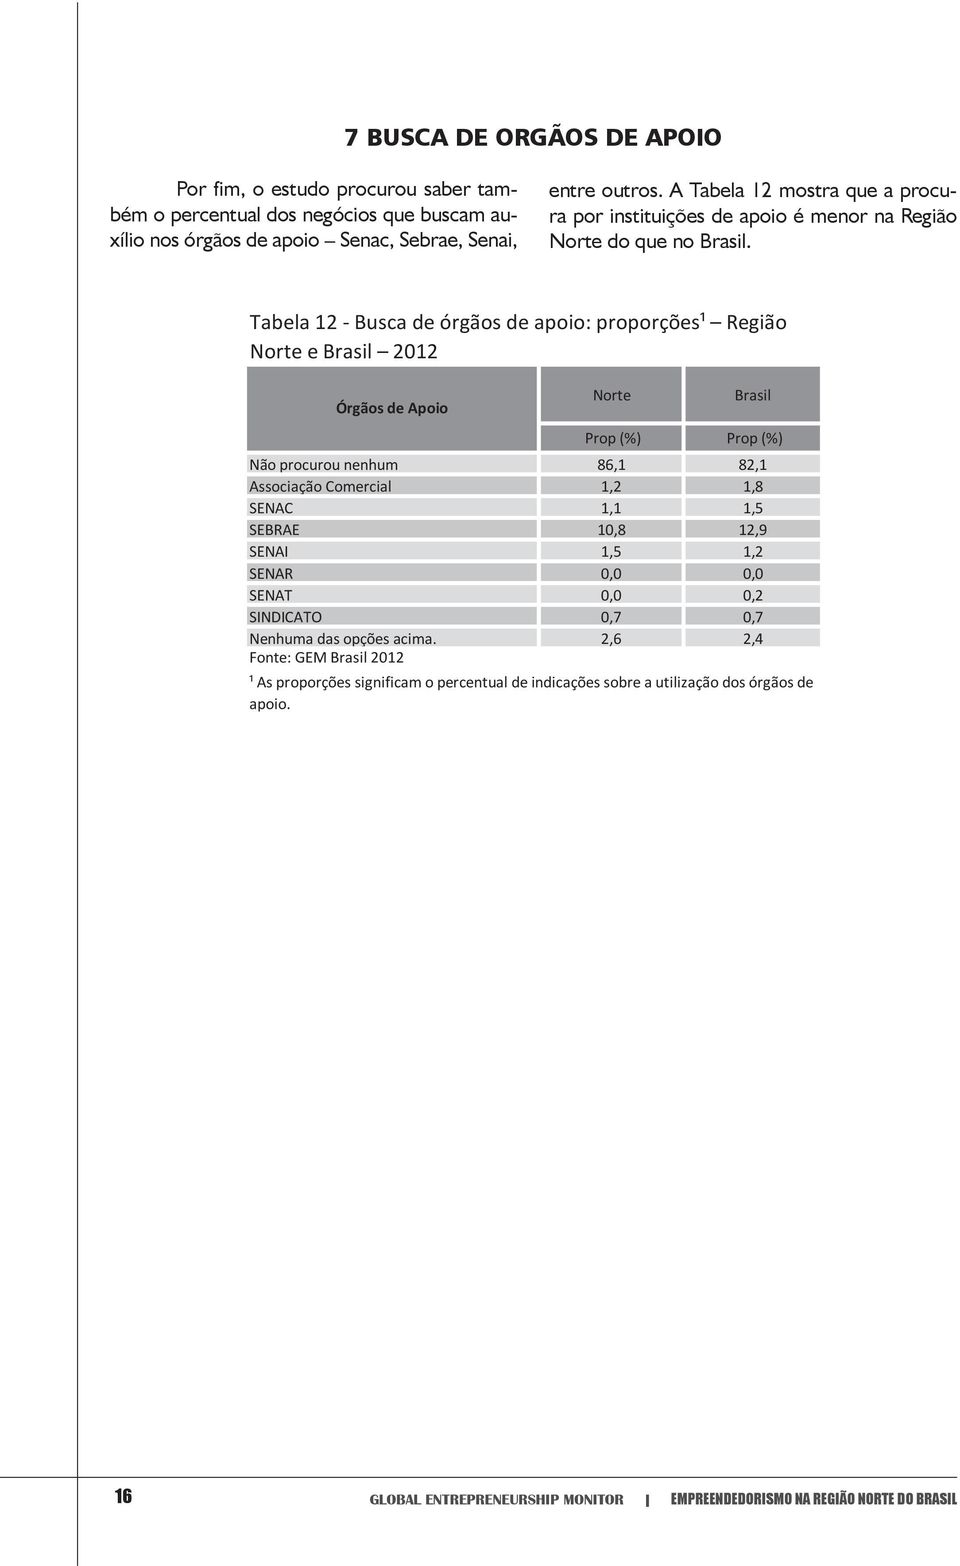 Tabela 12 - Busca de órgãos de apoio: proporções¹ Região Norte e Brasil 2012 Órgãos de Apoio Norte Brasil Prop (%) Prop (%) Não procurou nenhum 86,1 82,1 Associação Comercial 1,2 1,8